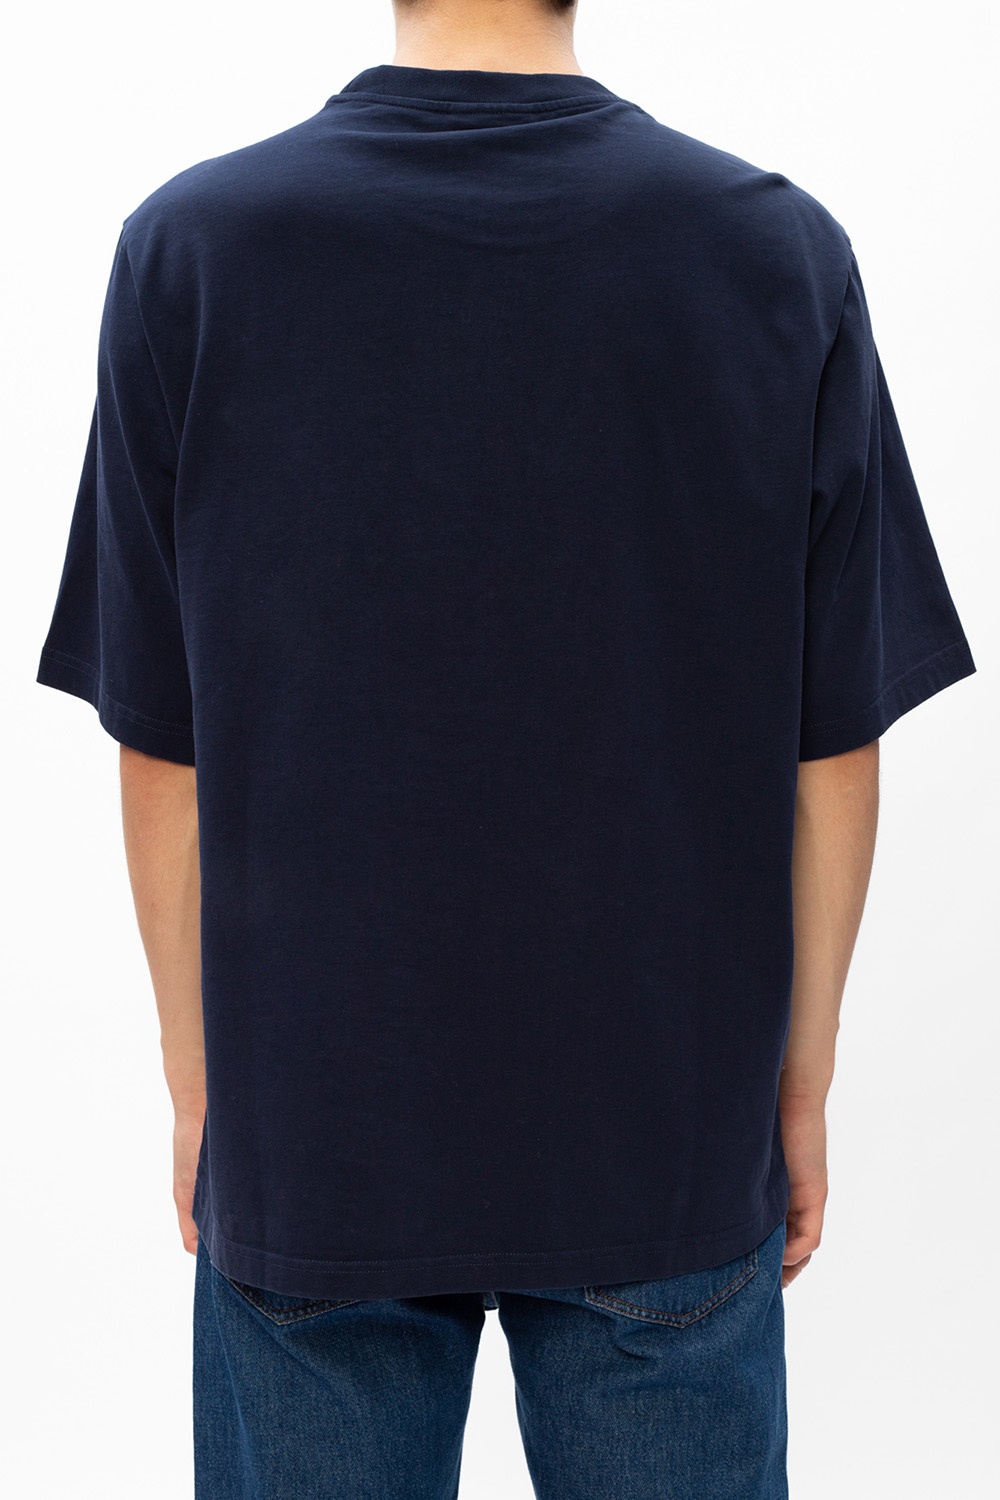 Kenzo Logo T-shirt | Men's Clothing | IetpShops